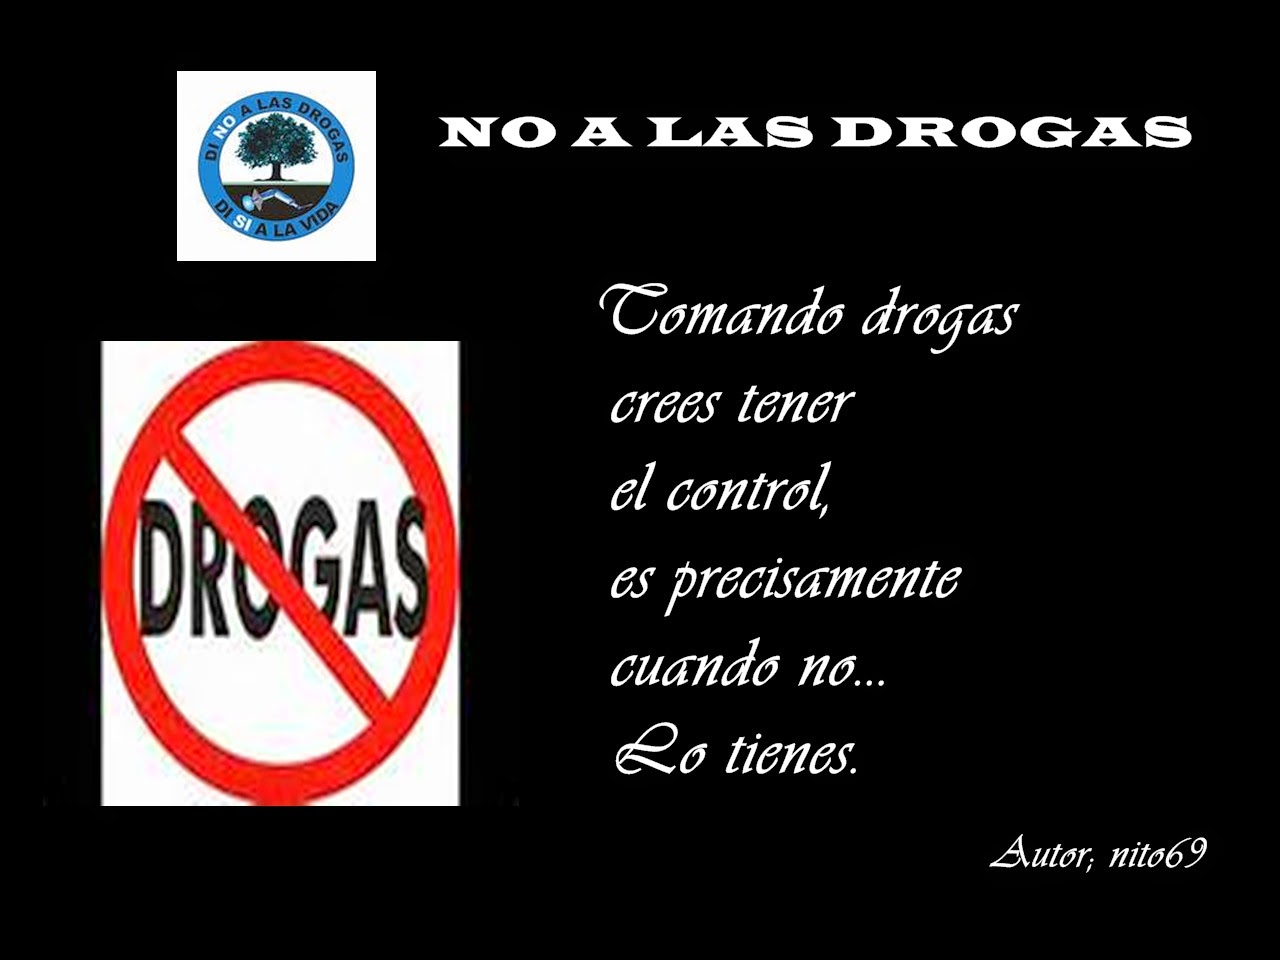 NO A LAS DROGAS